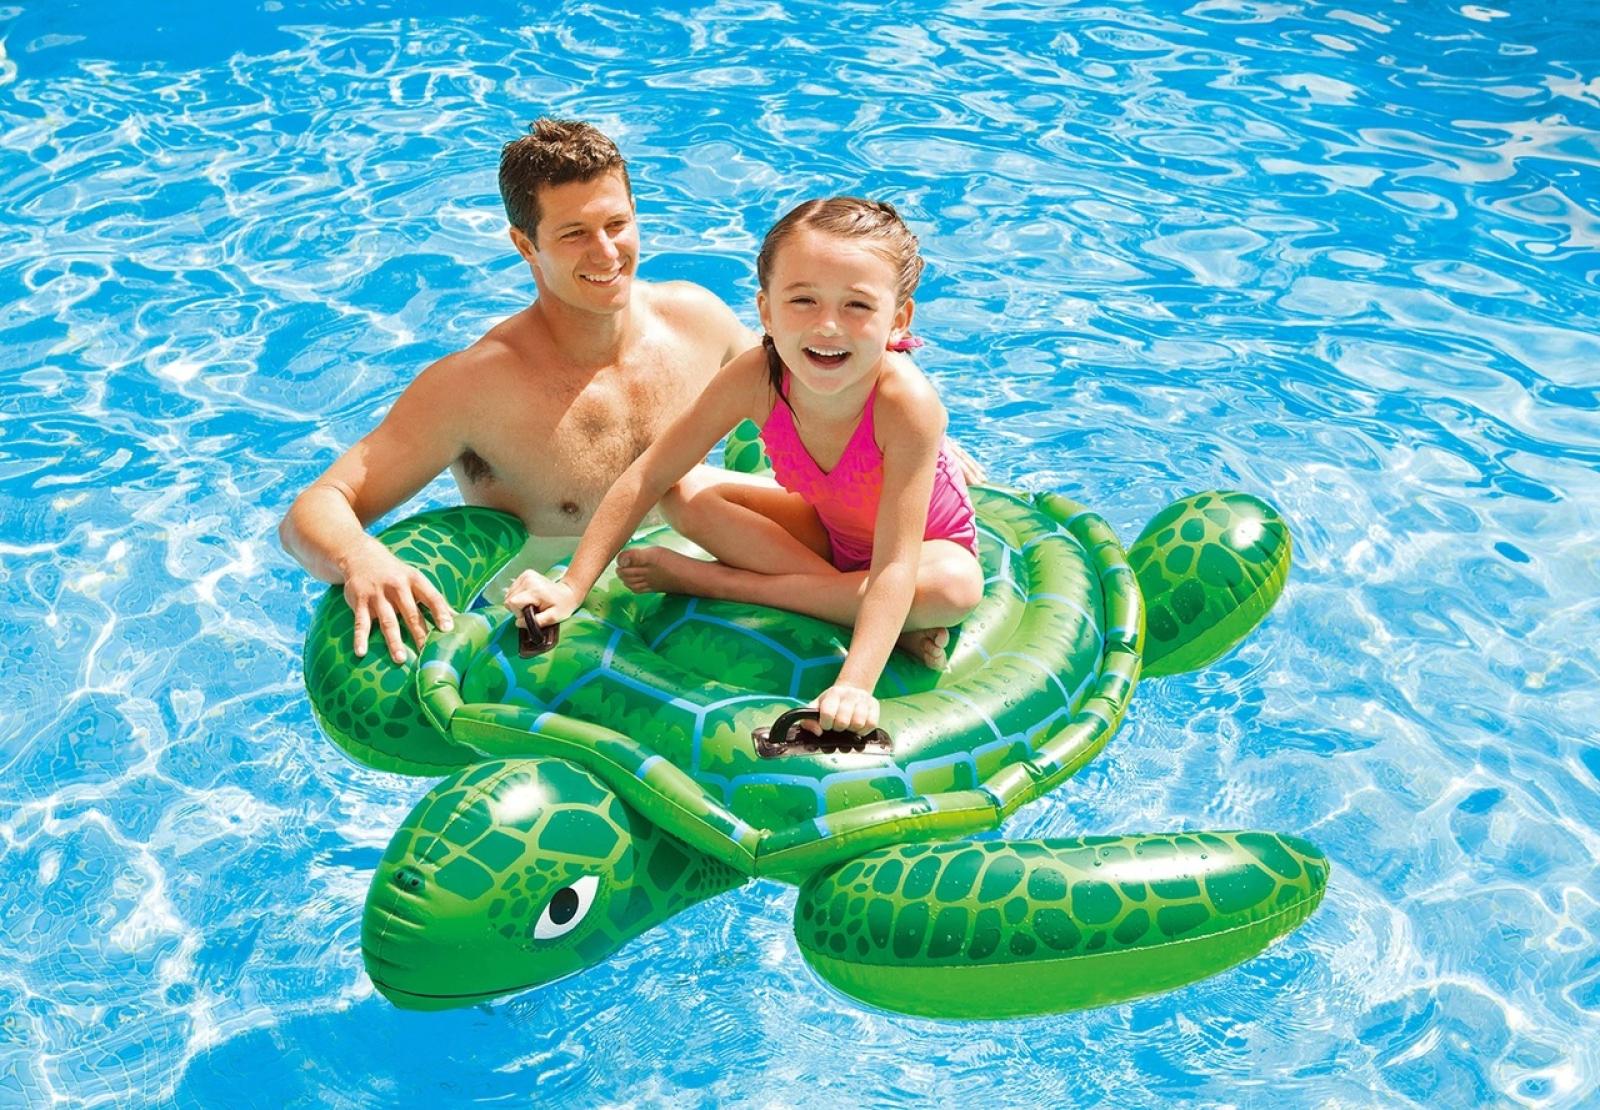 Intex Lil' Sea Turtle Ride-On Inflatable Pool Float